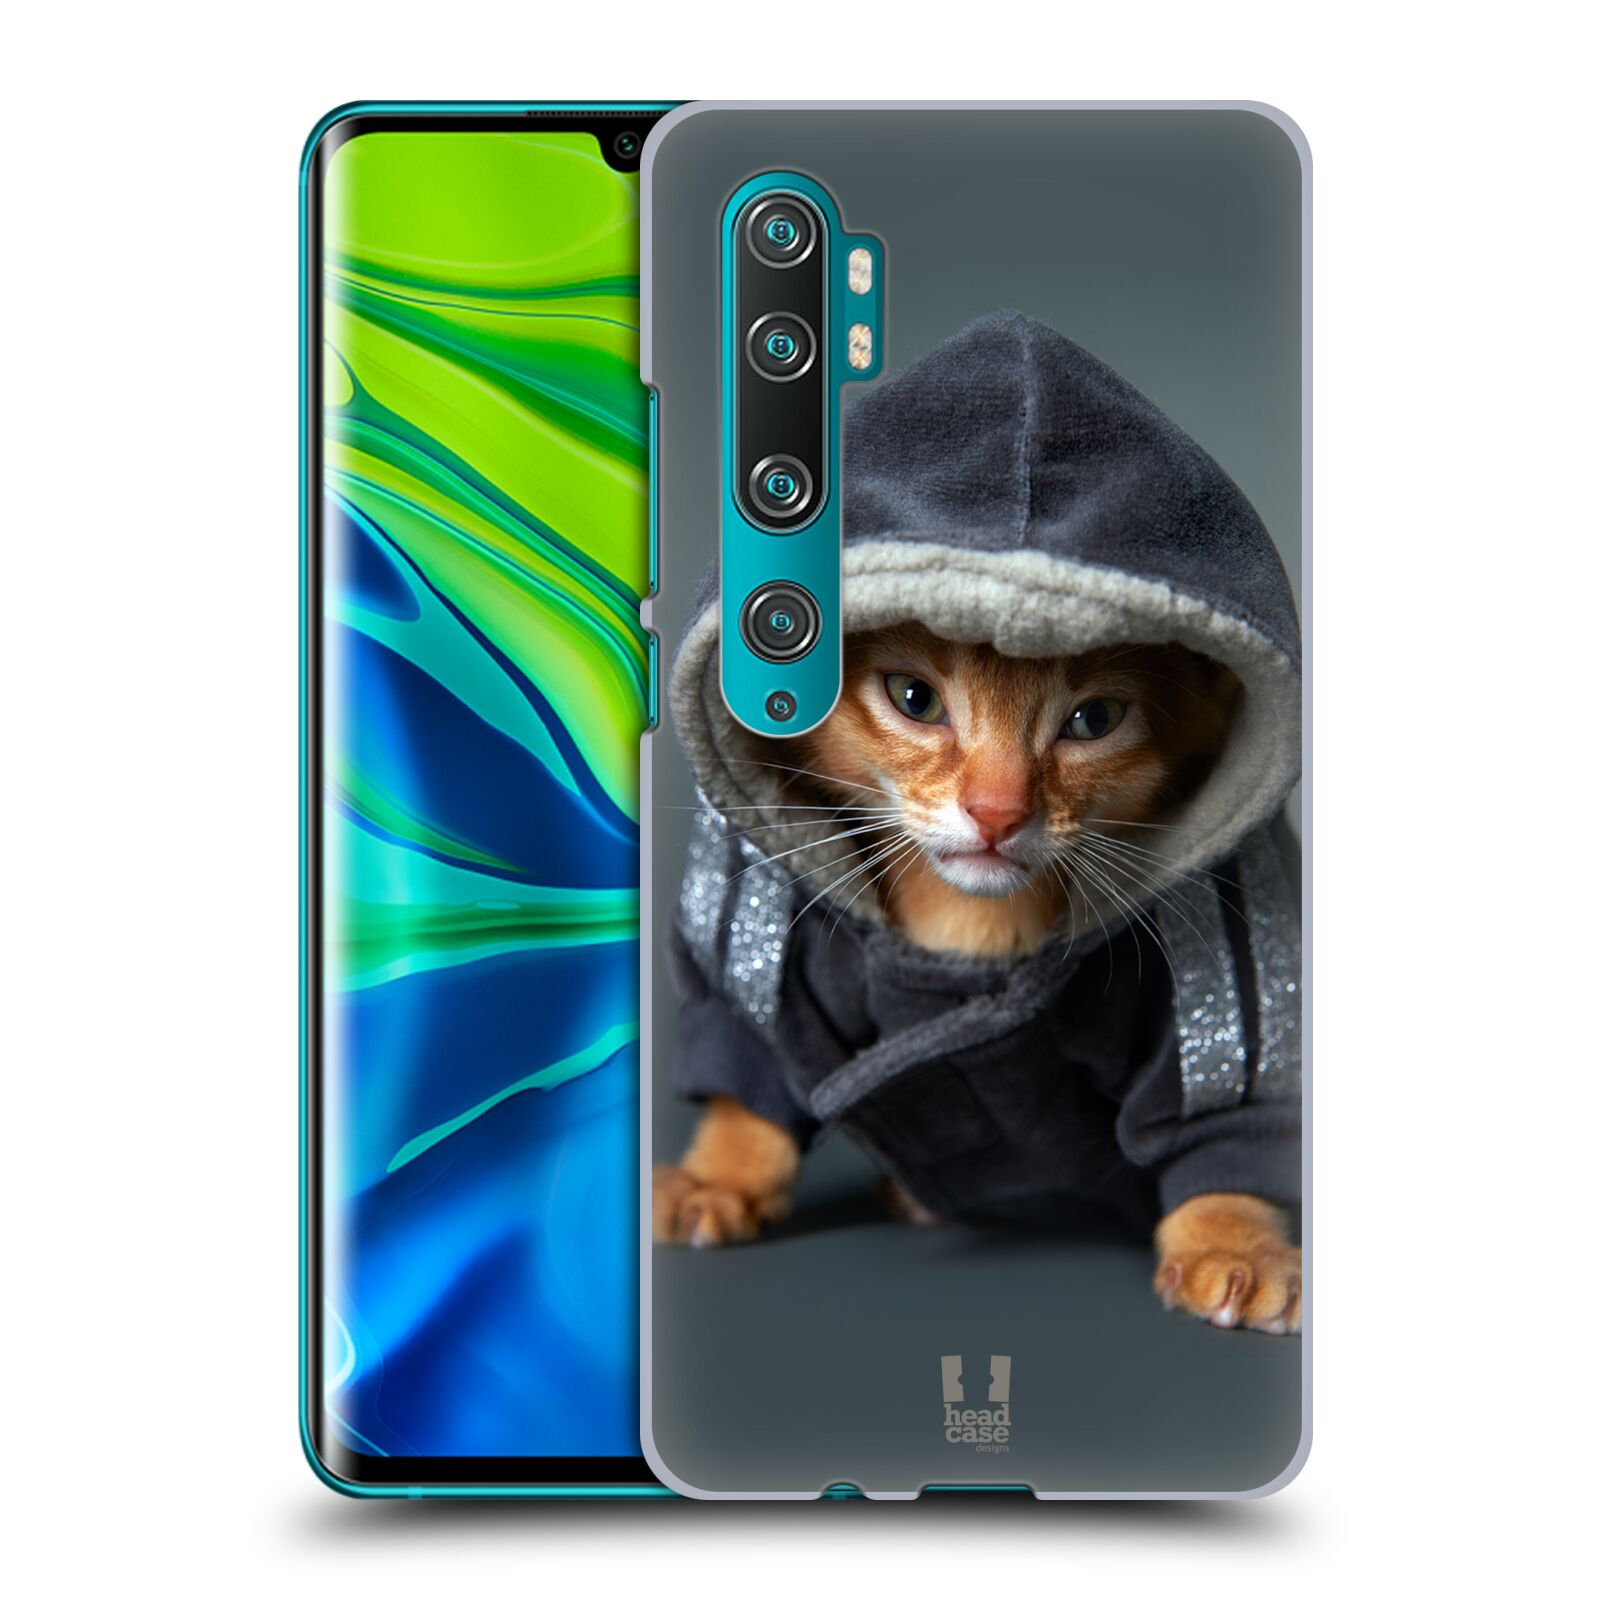 Pouzdro na mobil Xiaomi Mi Note 10 / Mi Note 10 PRO - HEAD CASE - vzor Legrační zvířátka kotě/kočička s kapucí